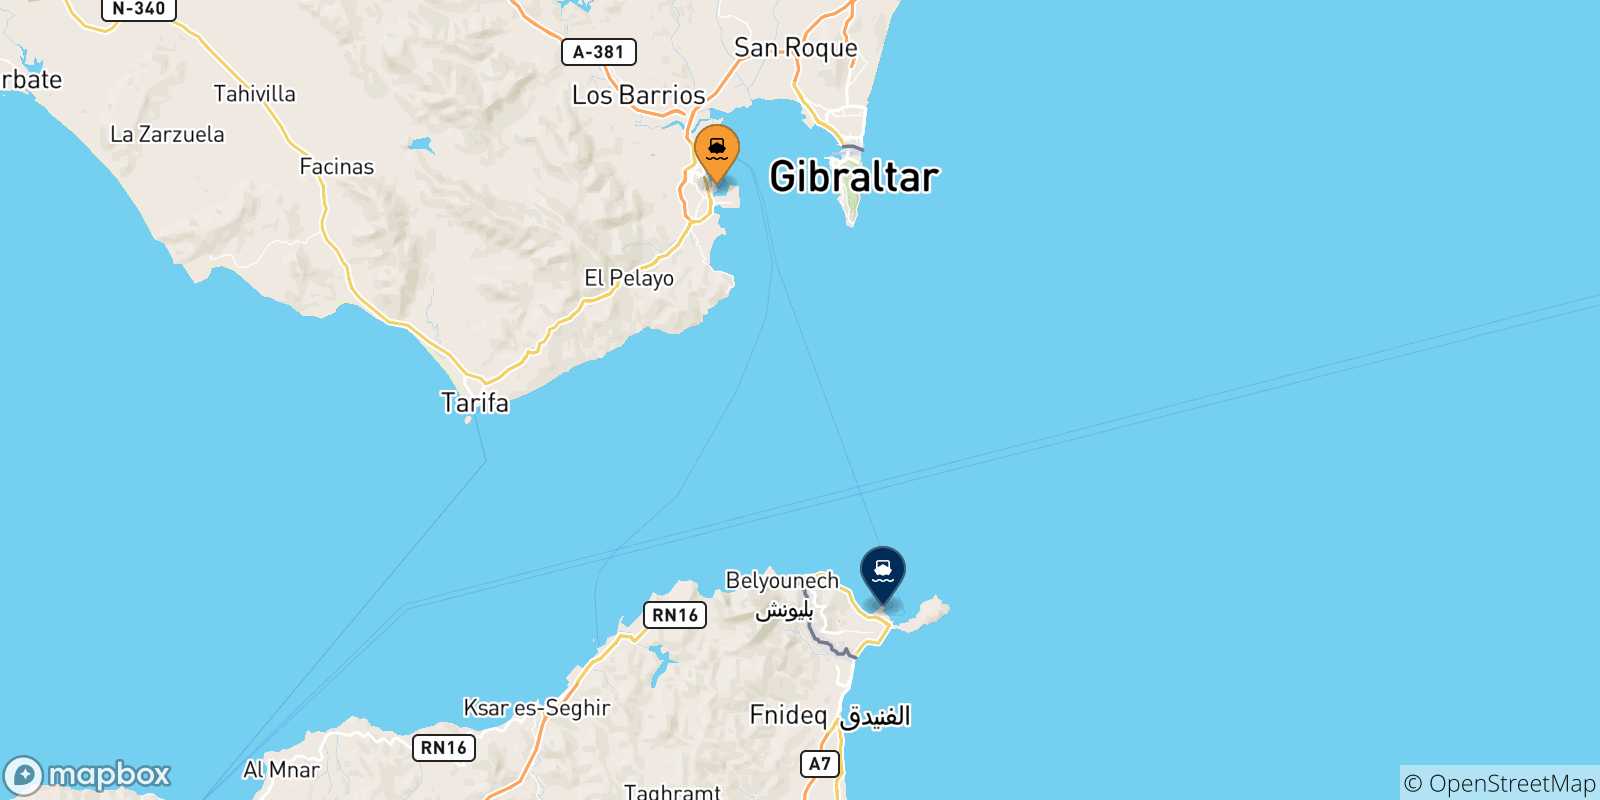 Mappa delle possibili rotte tra Algeciras e la Spagna